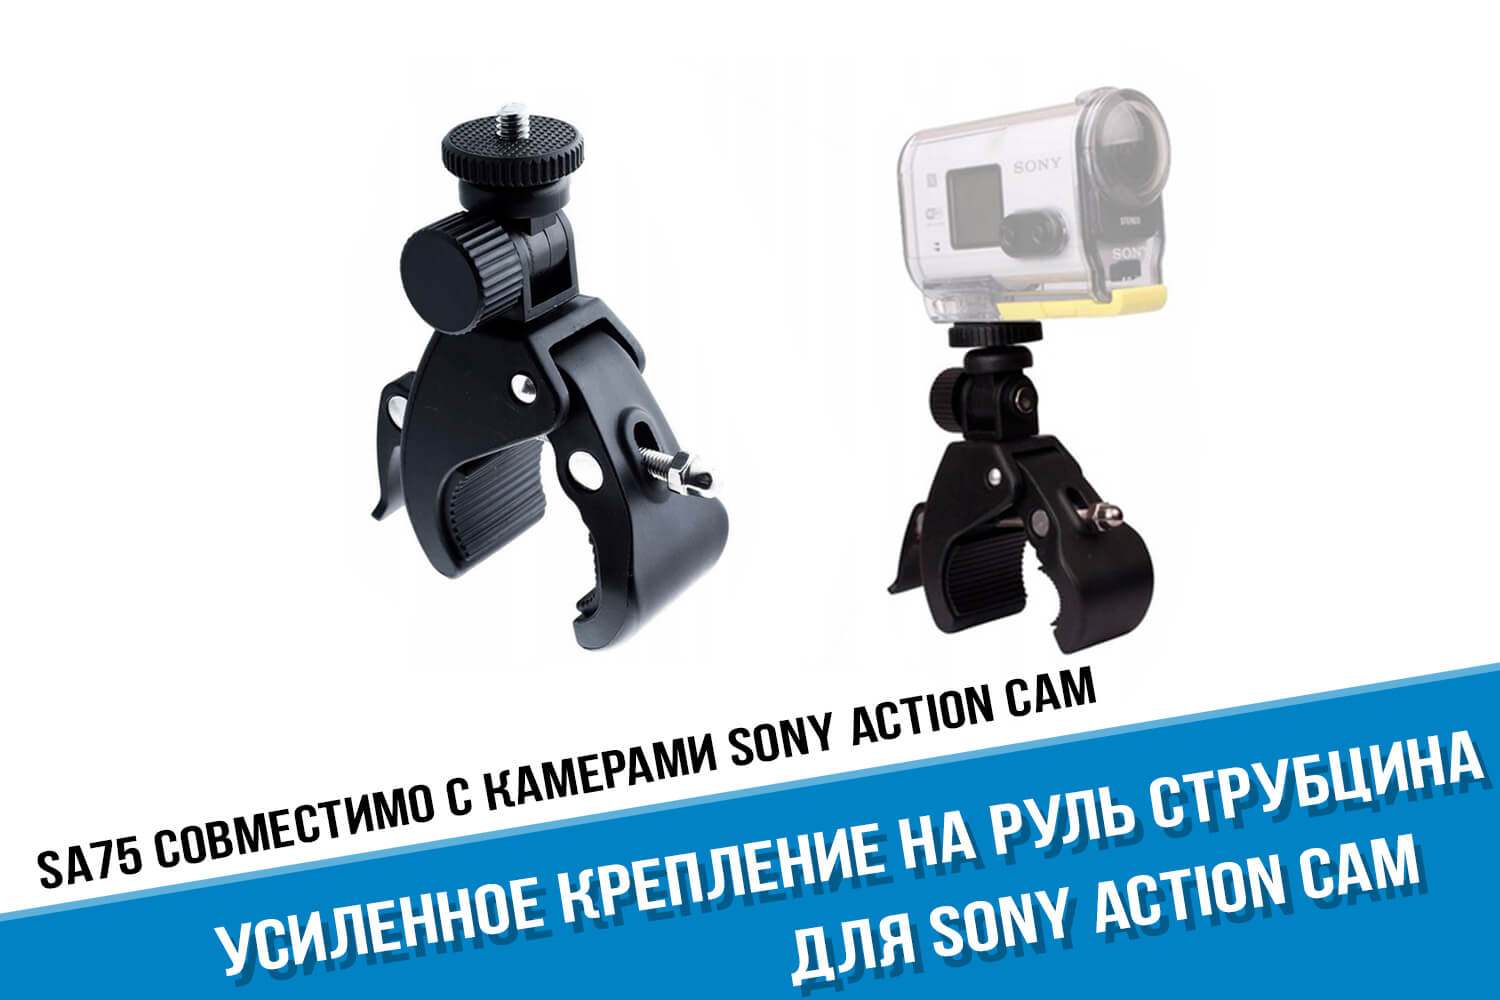 Усиленное крепление на руль для Sony Action Cam